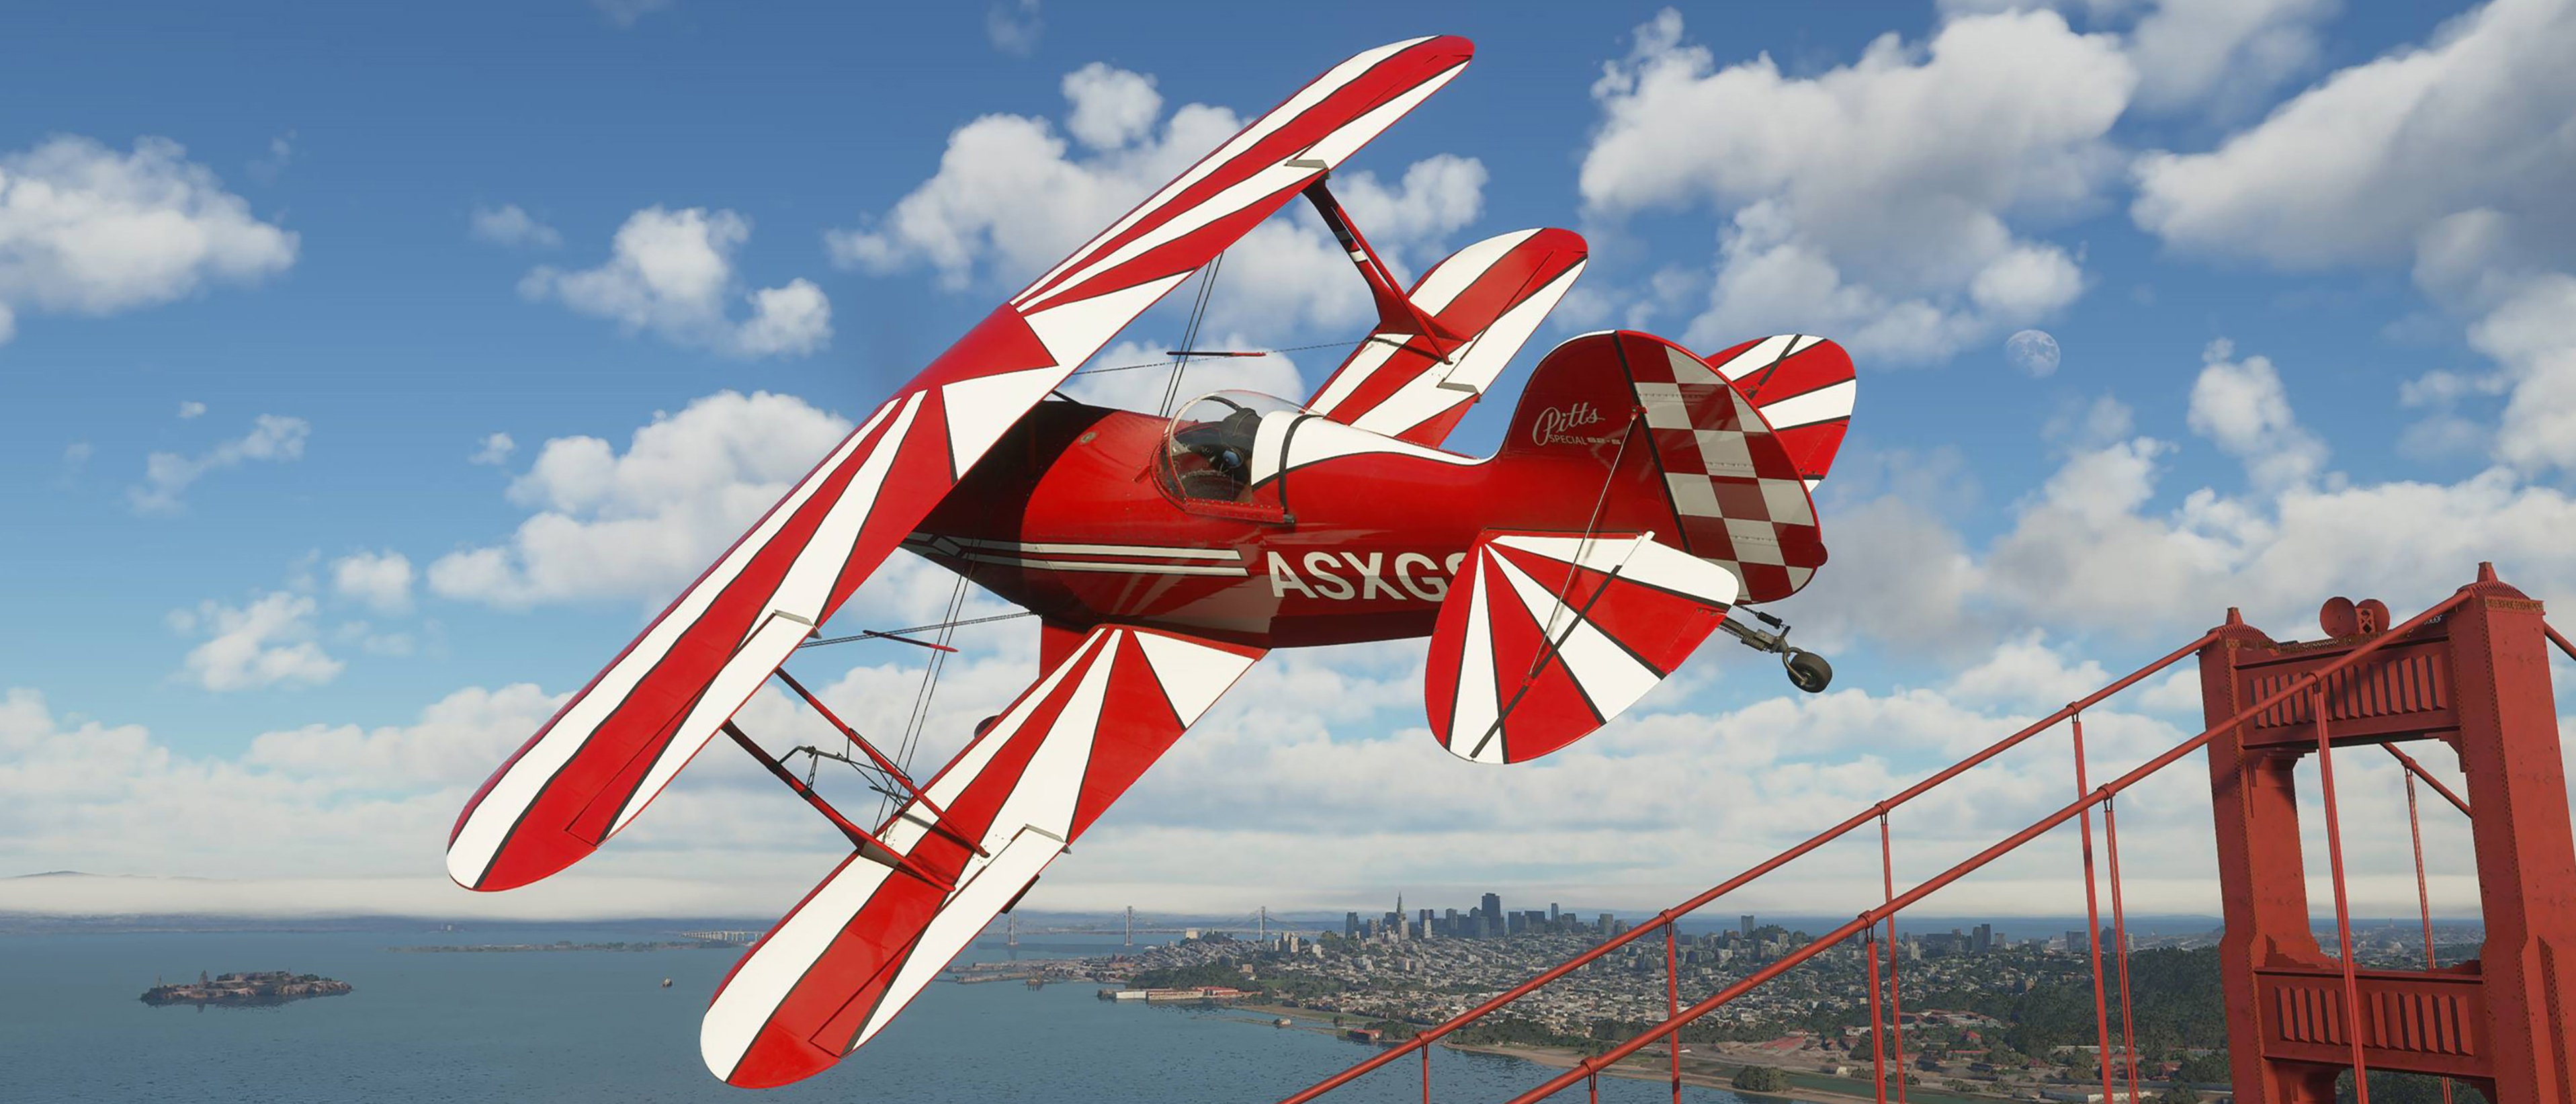 PC Specifications for Microsoft Flight Simulator 2020 - VR Flight